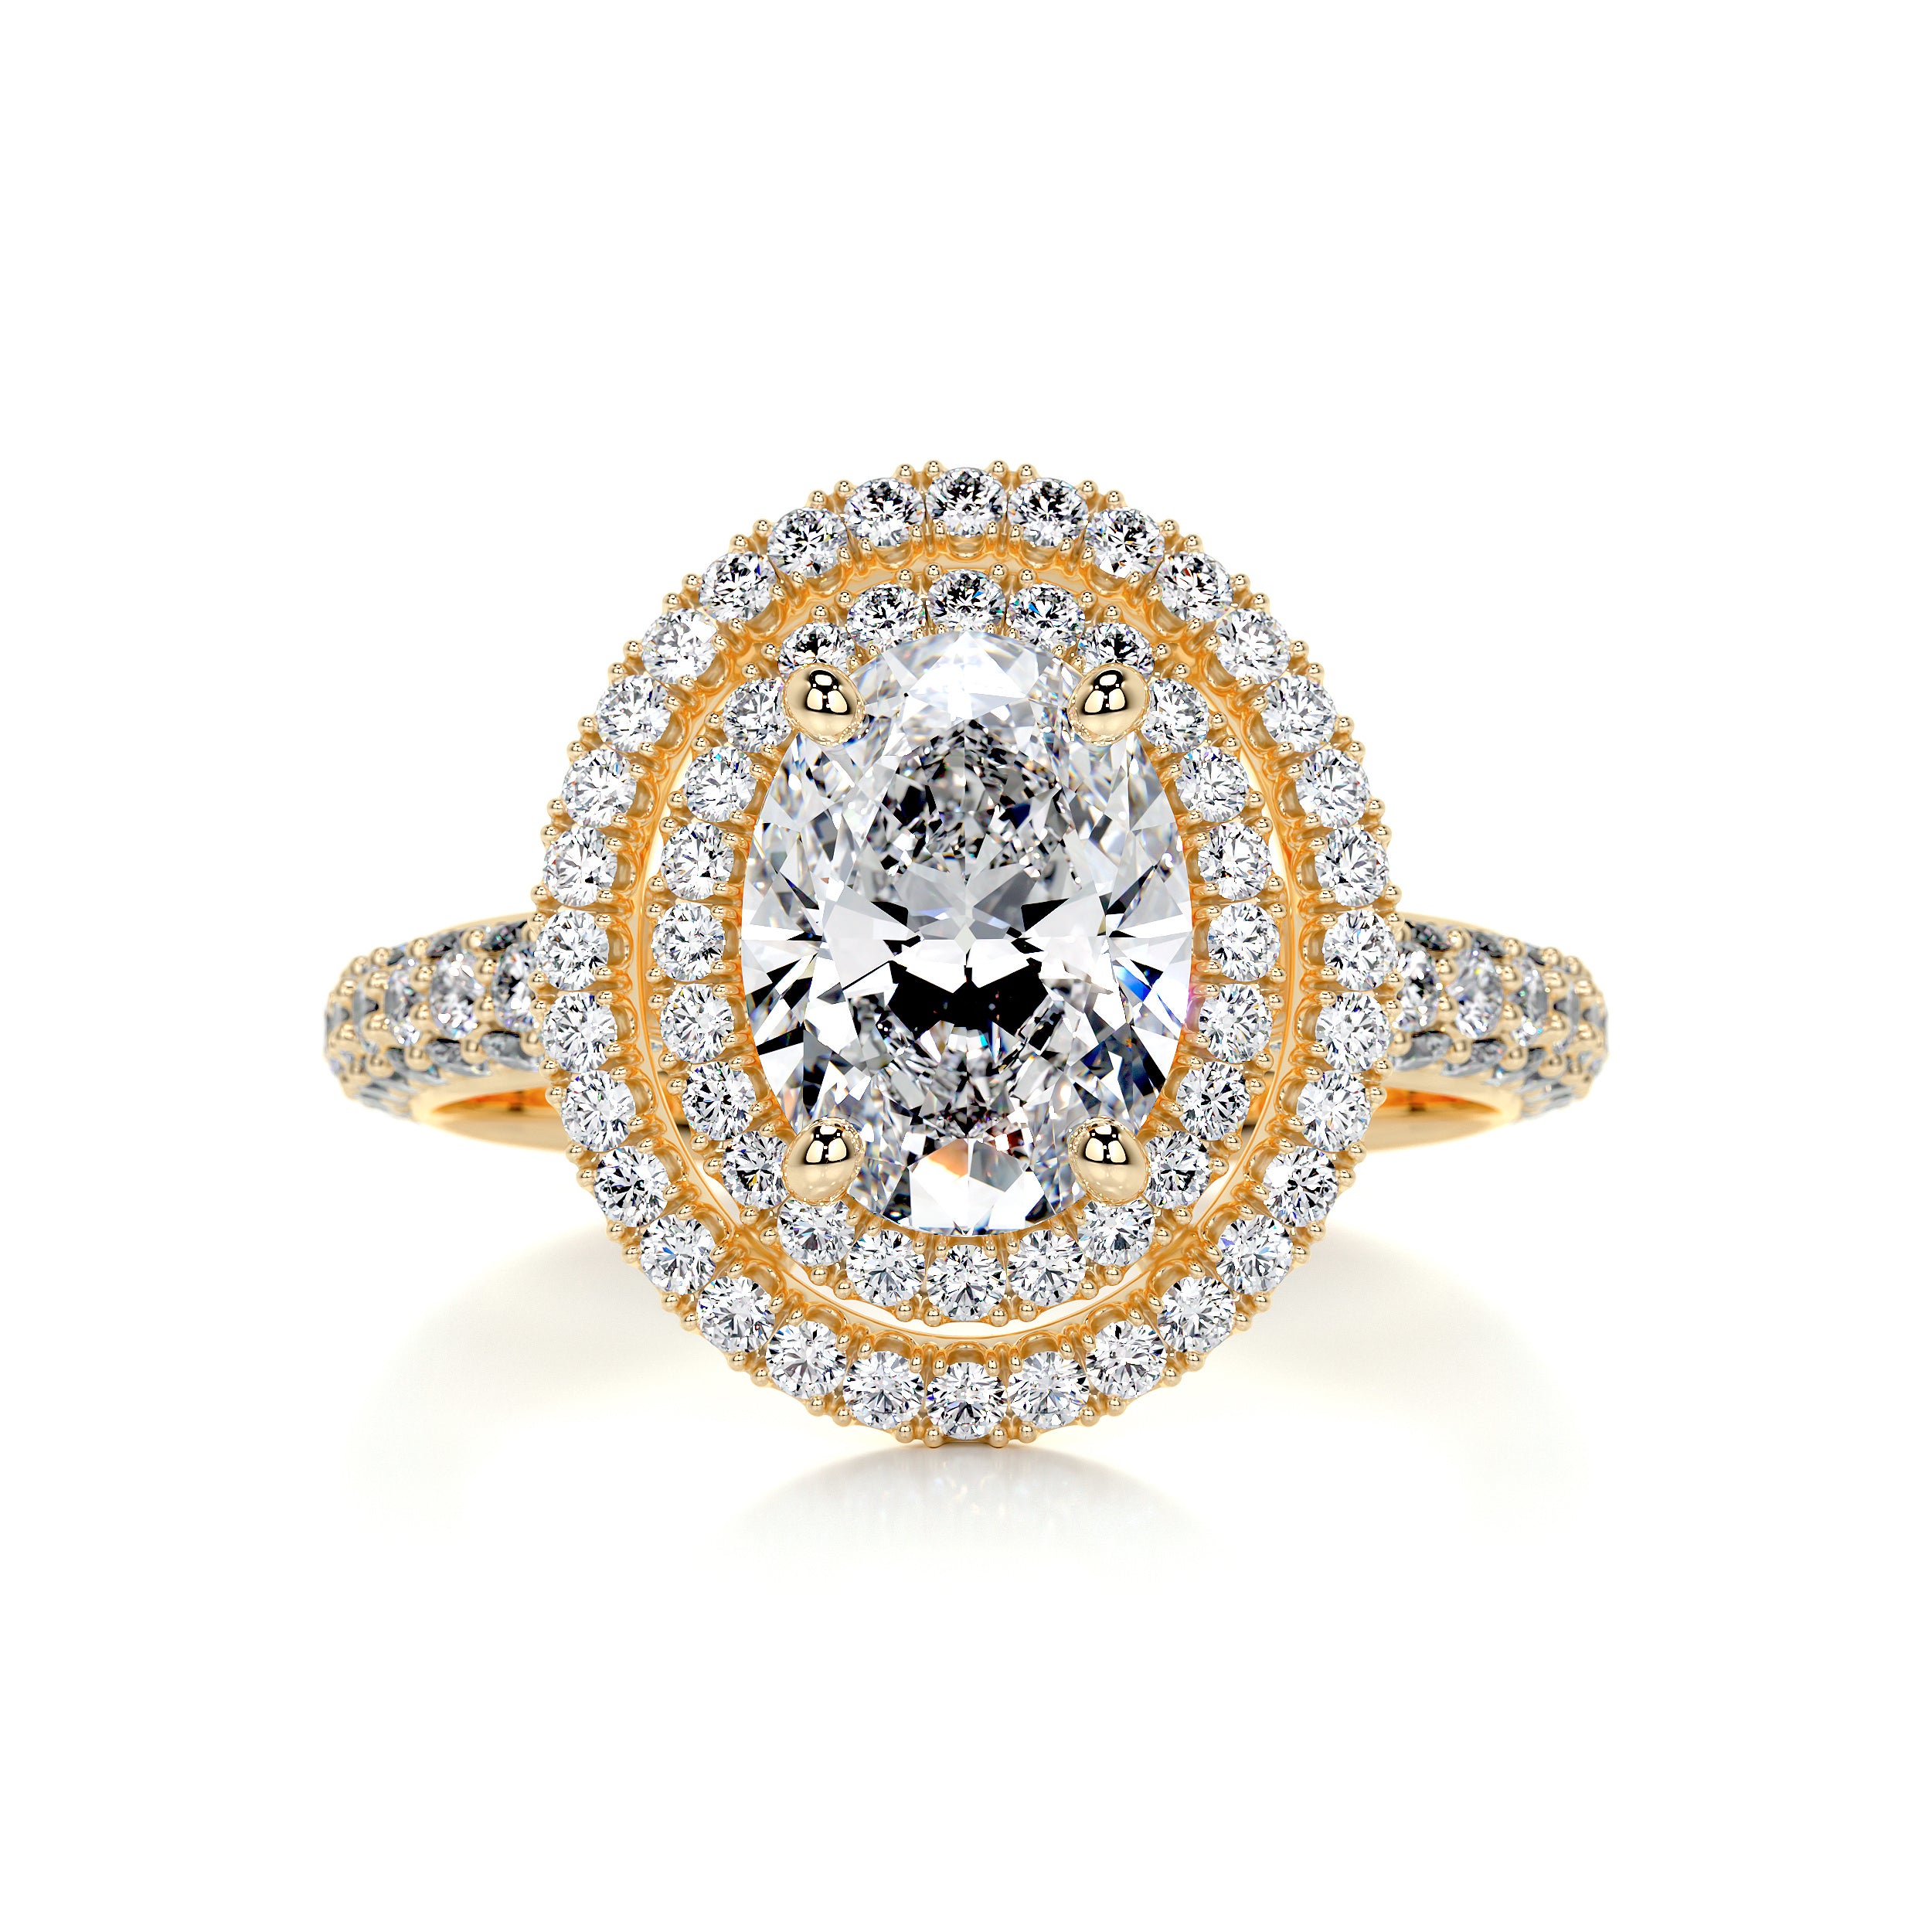 Nora Diamond Engagement Ring   (3 Carat) -18K Yellow Gold